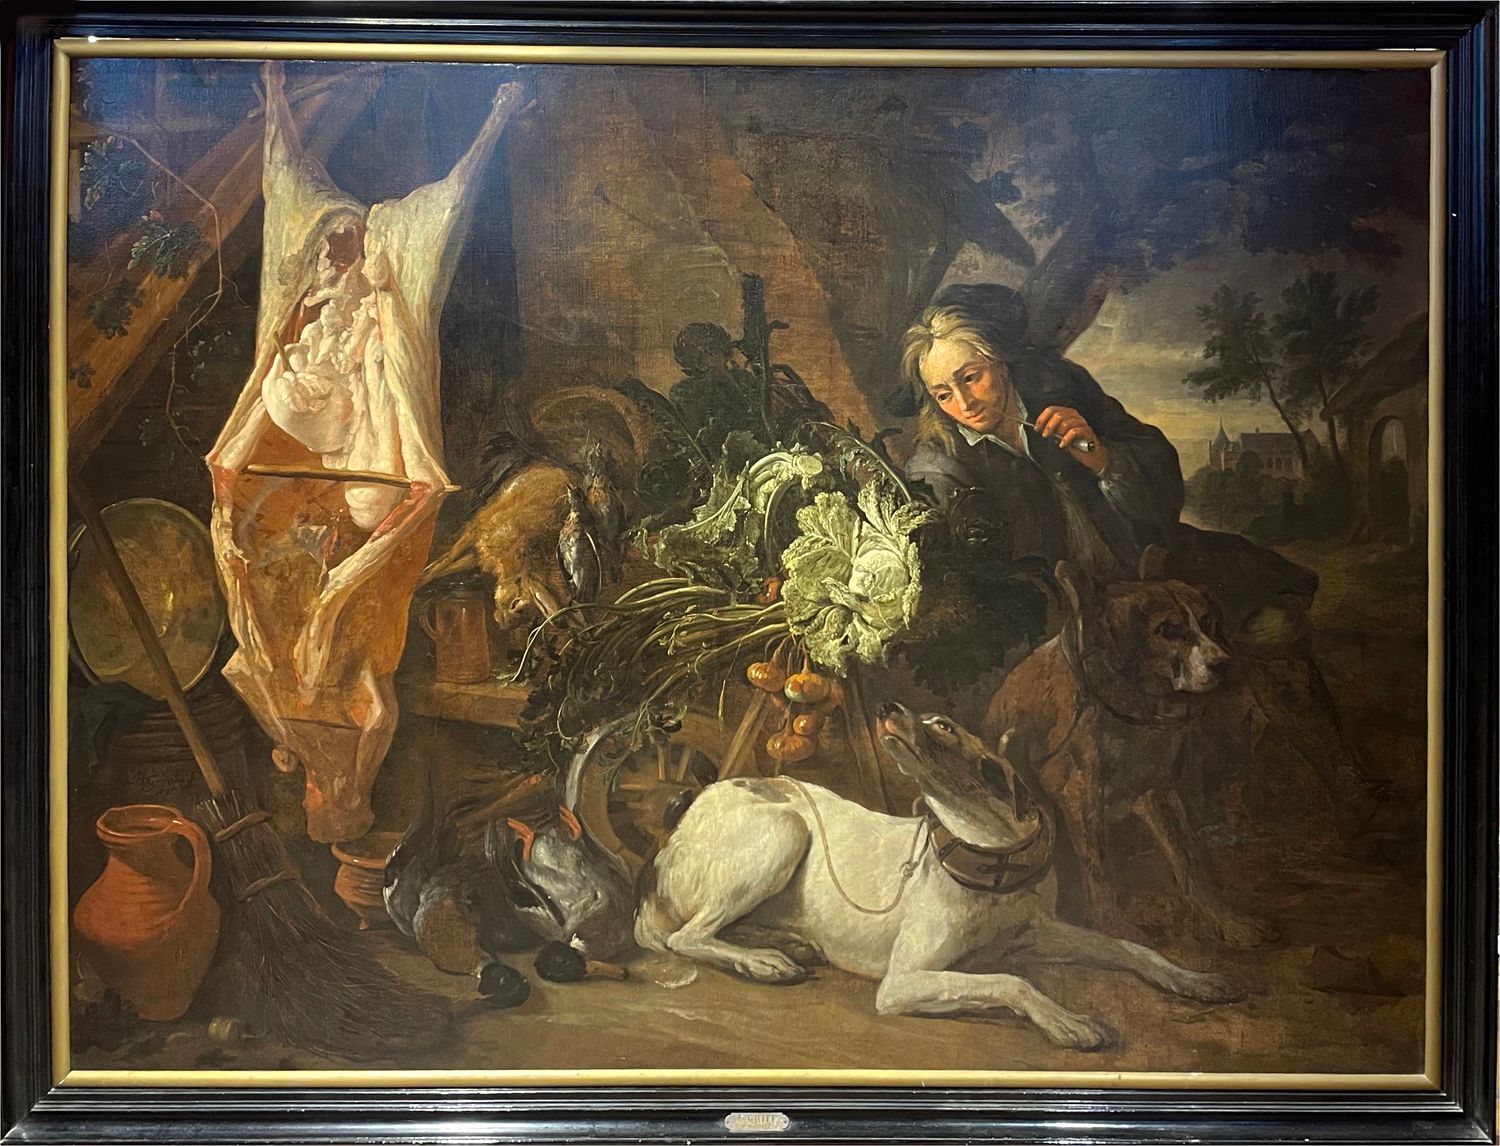 Adriaen DE GRYEF. 从打猎中返回。布面油画，181 x 242。左下方有签名。木制框架。